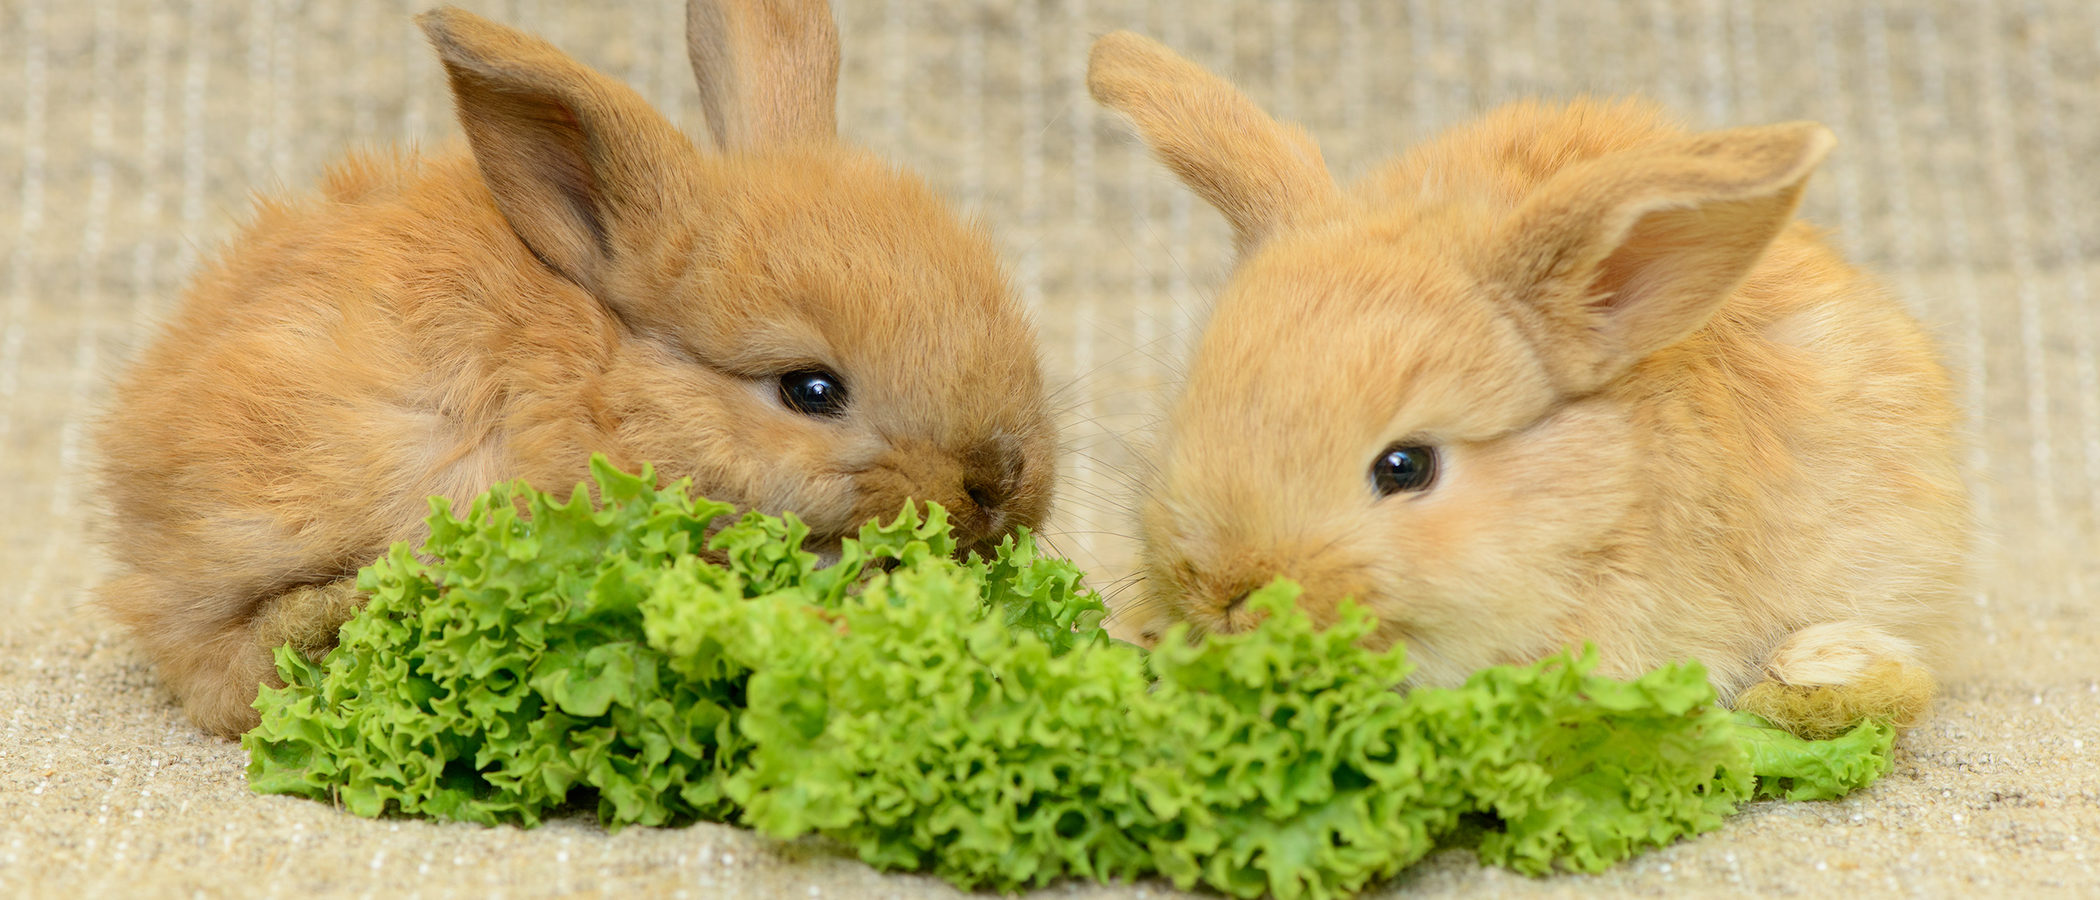 Planta Que Comen Los Conejos